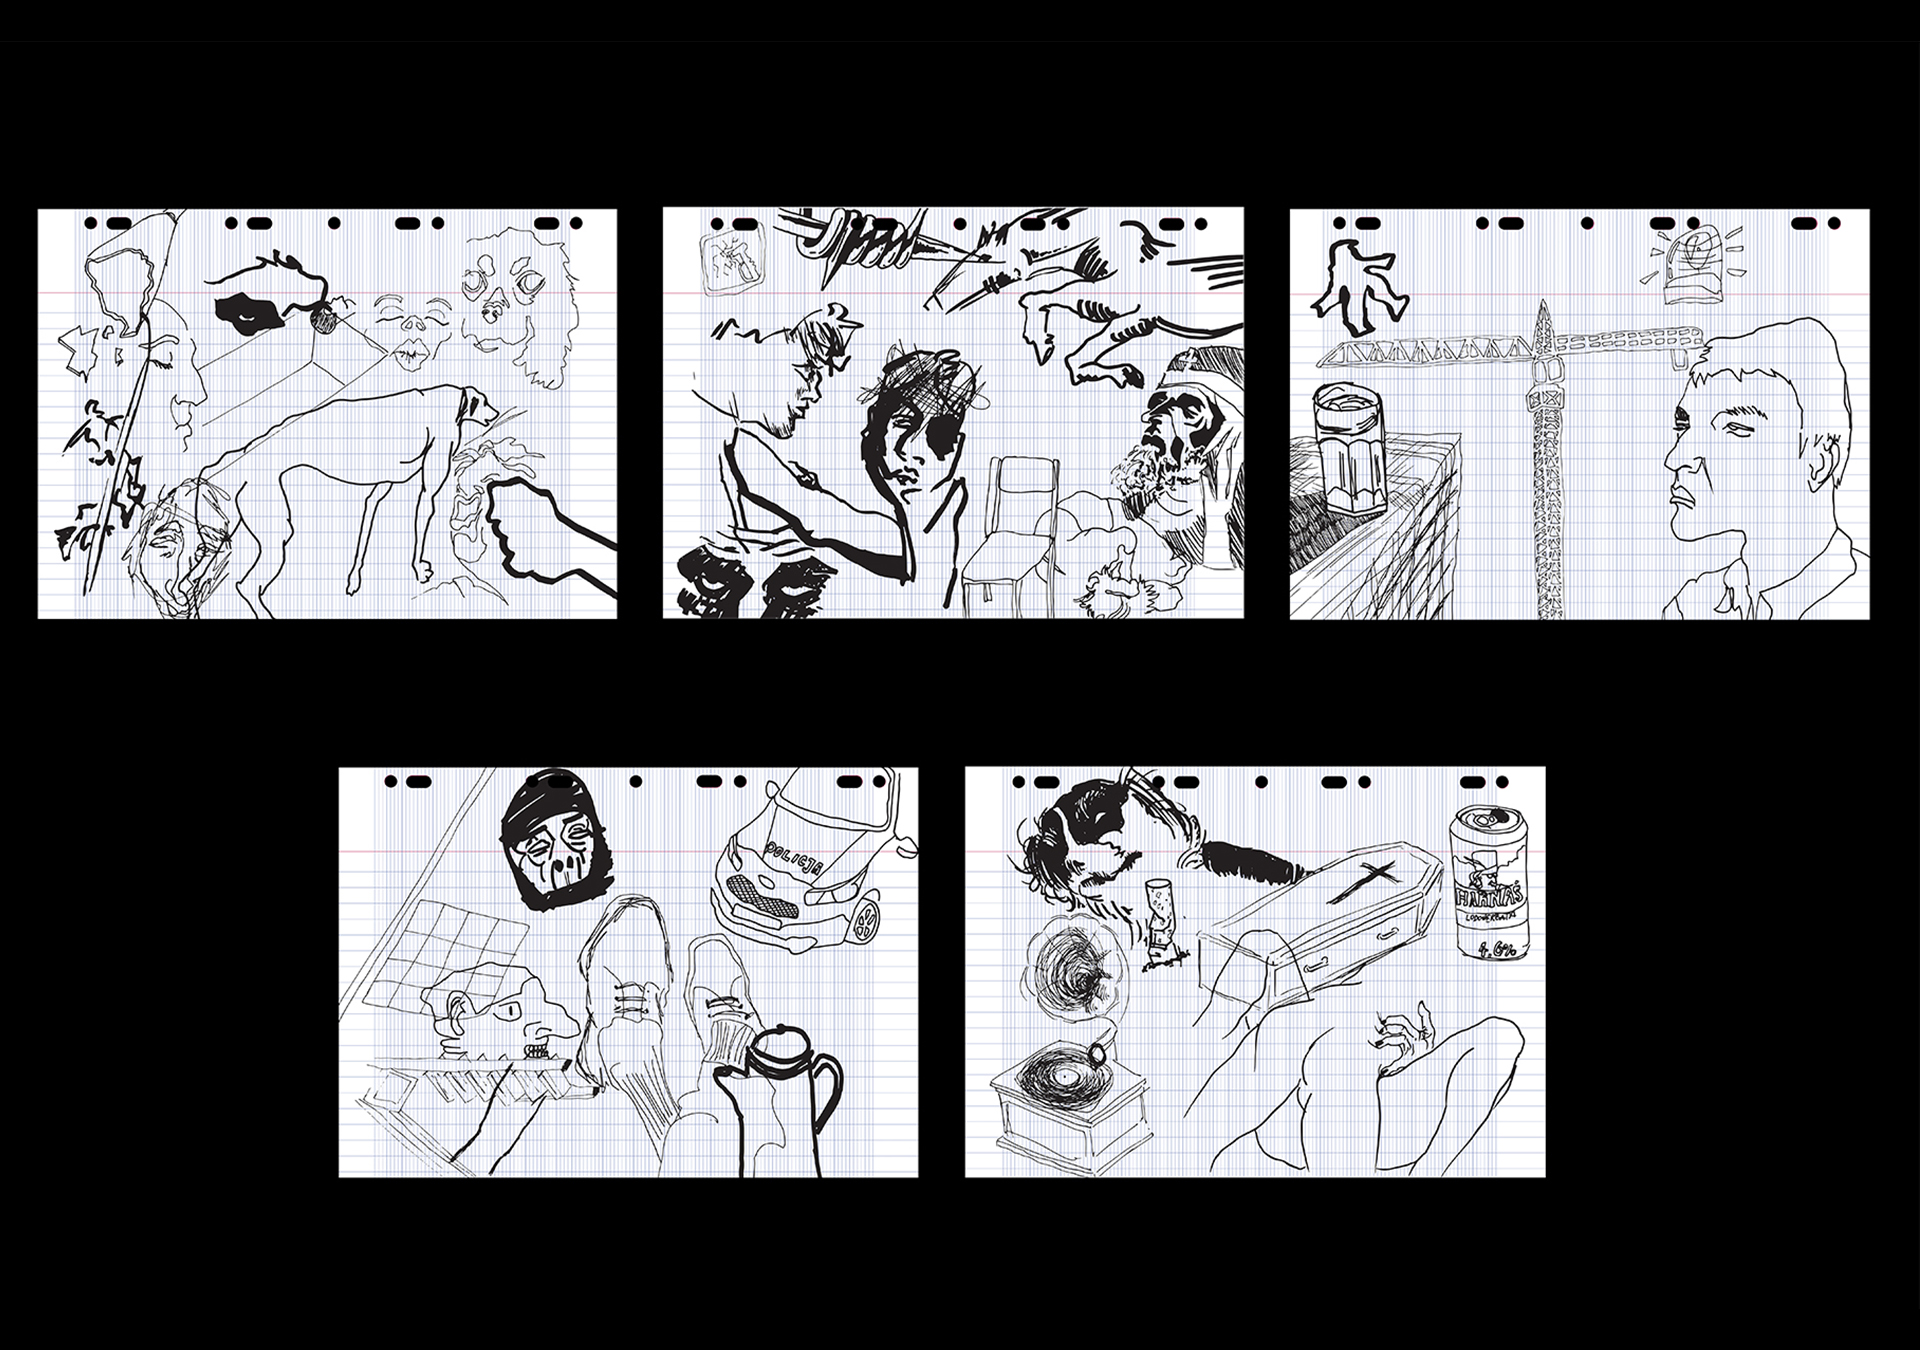 Na czarnym tle widnieje pięć poziomych rysunków, wykonanych na kartce w cienką podłużną kratkę, przystosowaną do segregatorów lub skoroszytów. Jest to zbiór różnych momentów z życia autora. 